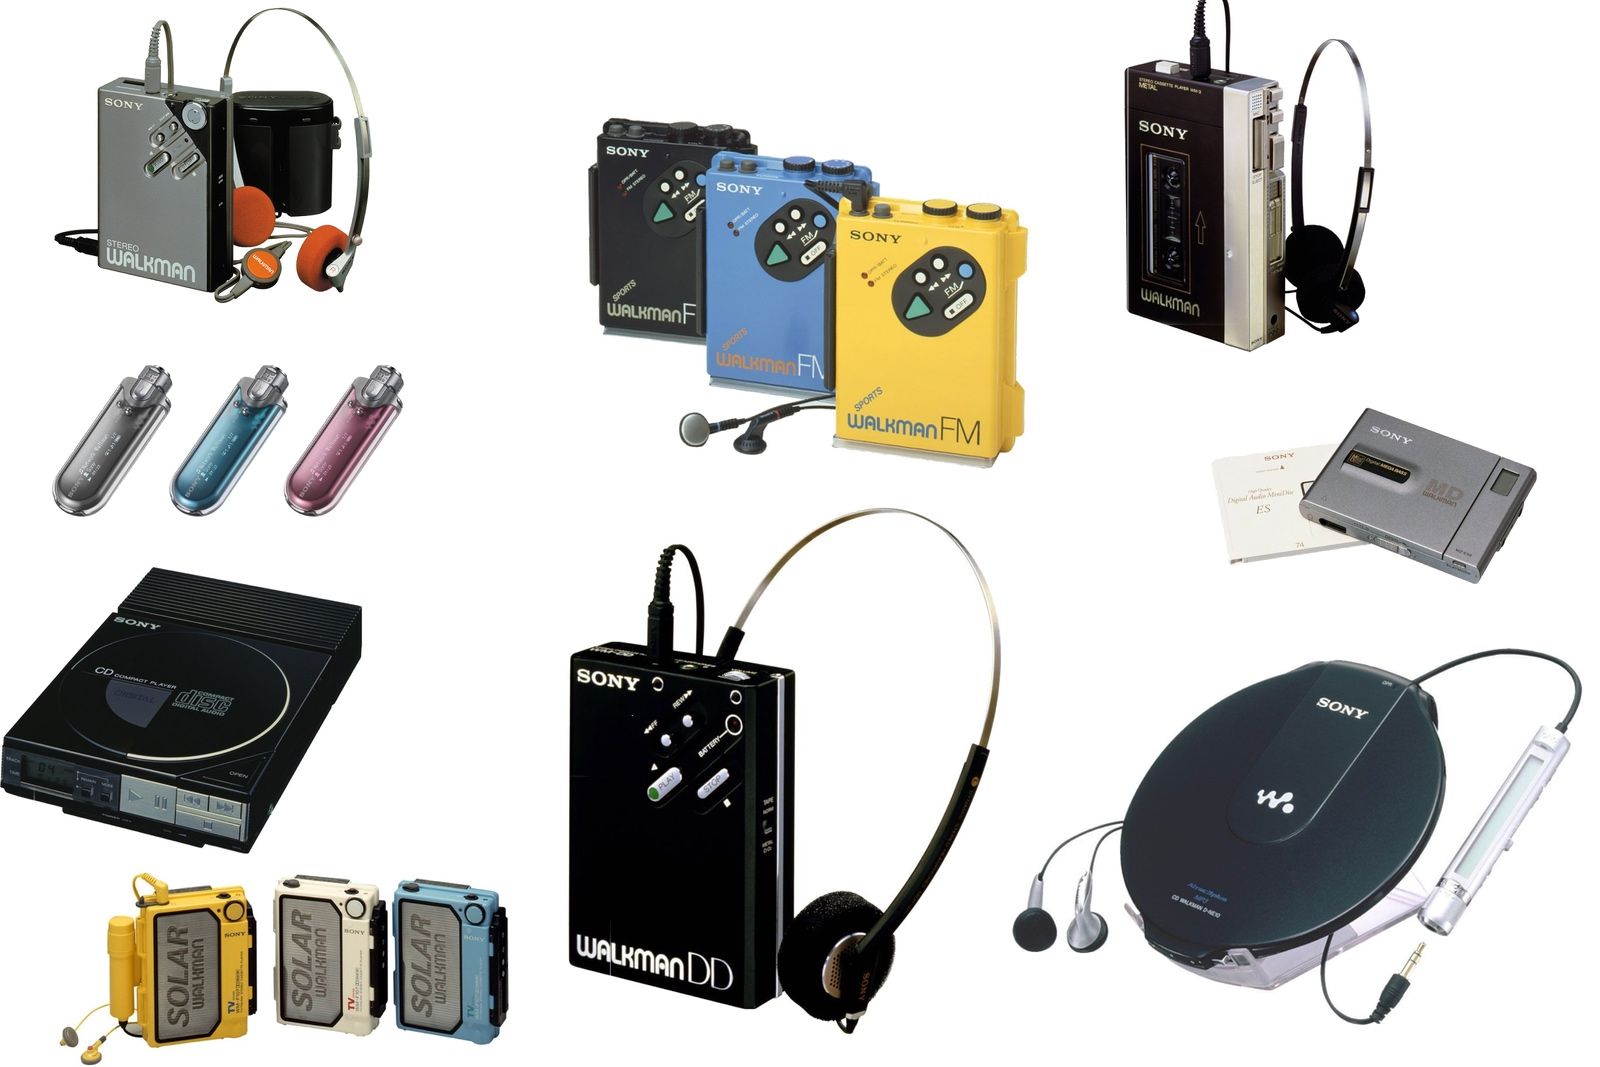 Vuelve un clásico de los ochenta: el Walkman de Sony